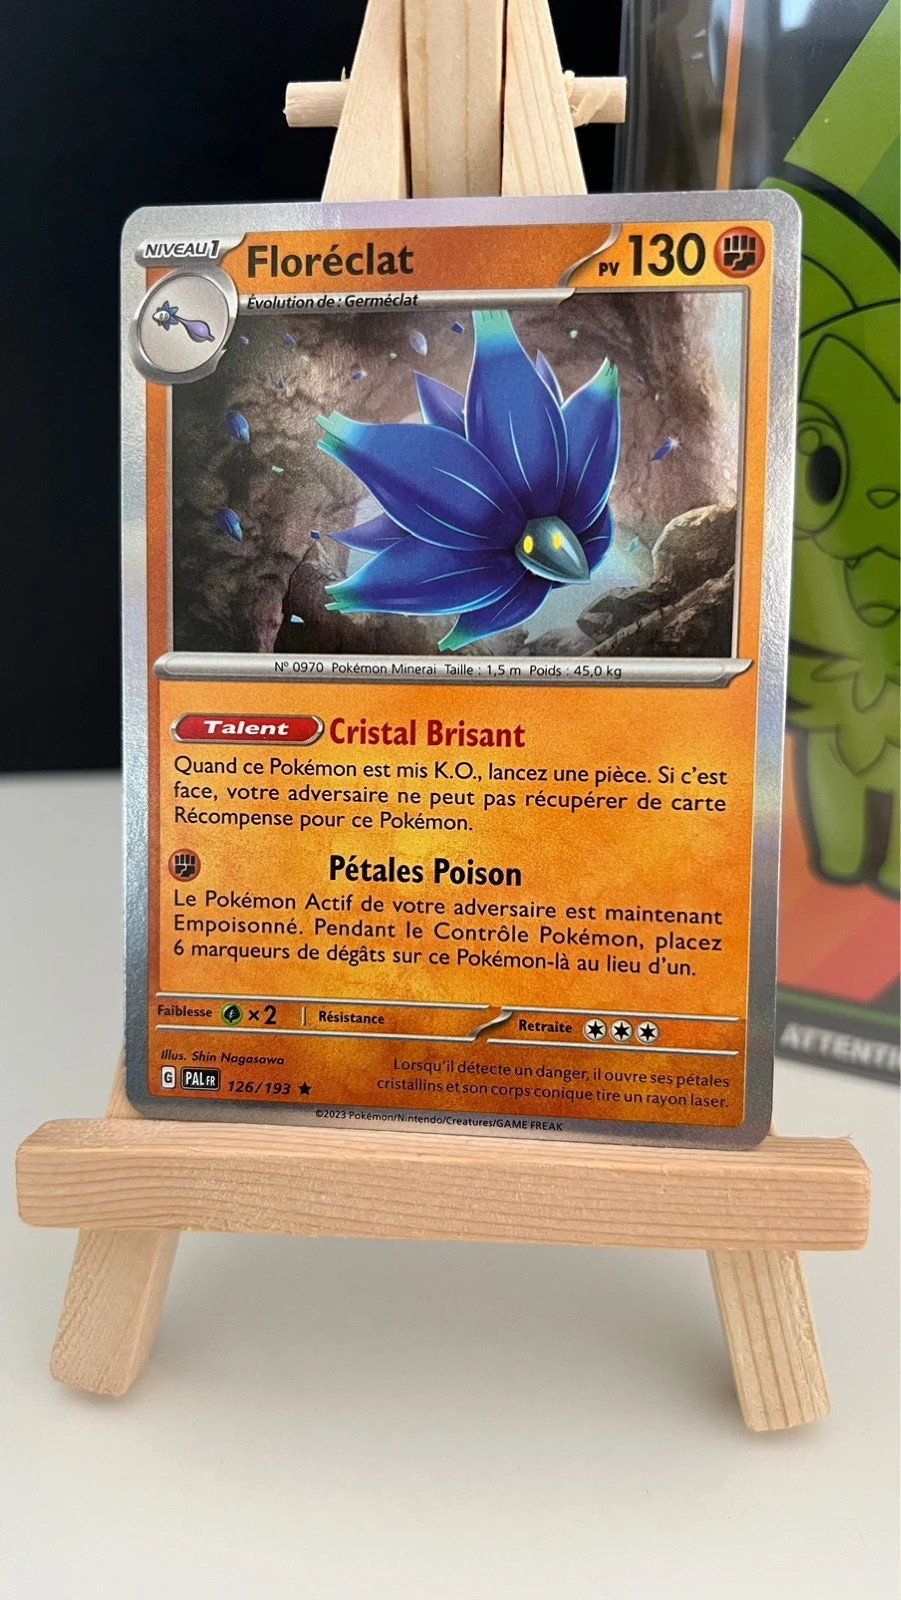 [FR] Pokémon Carte EV02 126/193 Floréclat HOLO